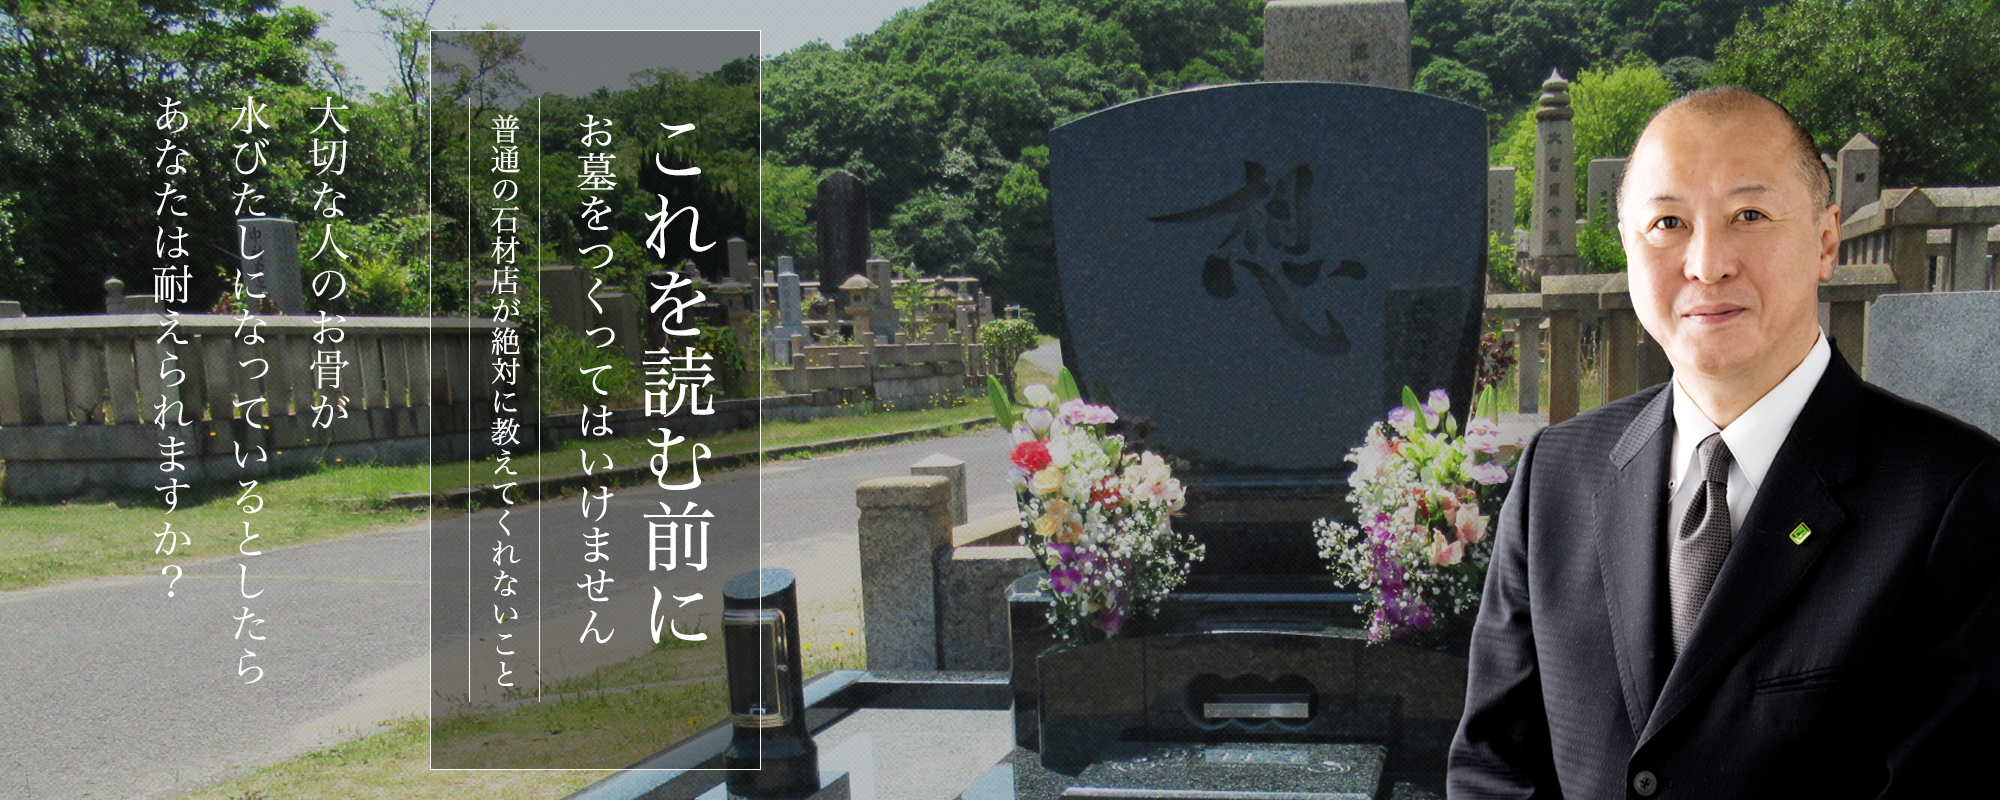 お墓、デザイン墓石、墓地に関するお悩みは『信頼棺®』の神戸市第一石材へ